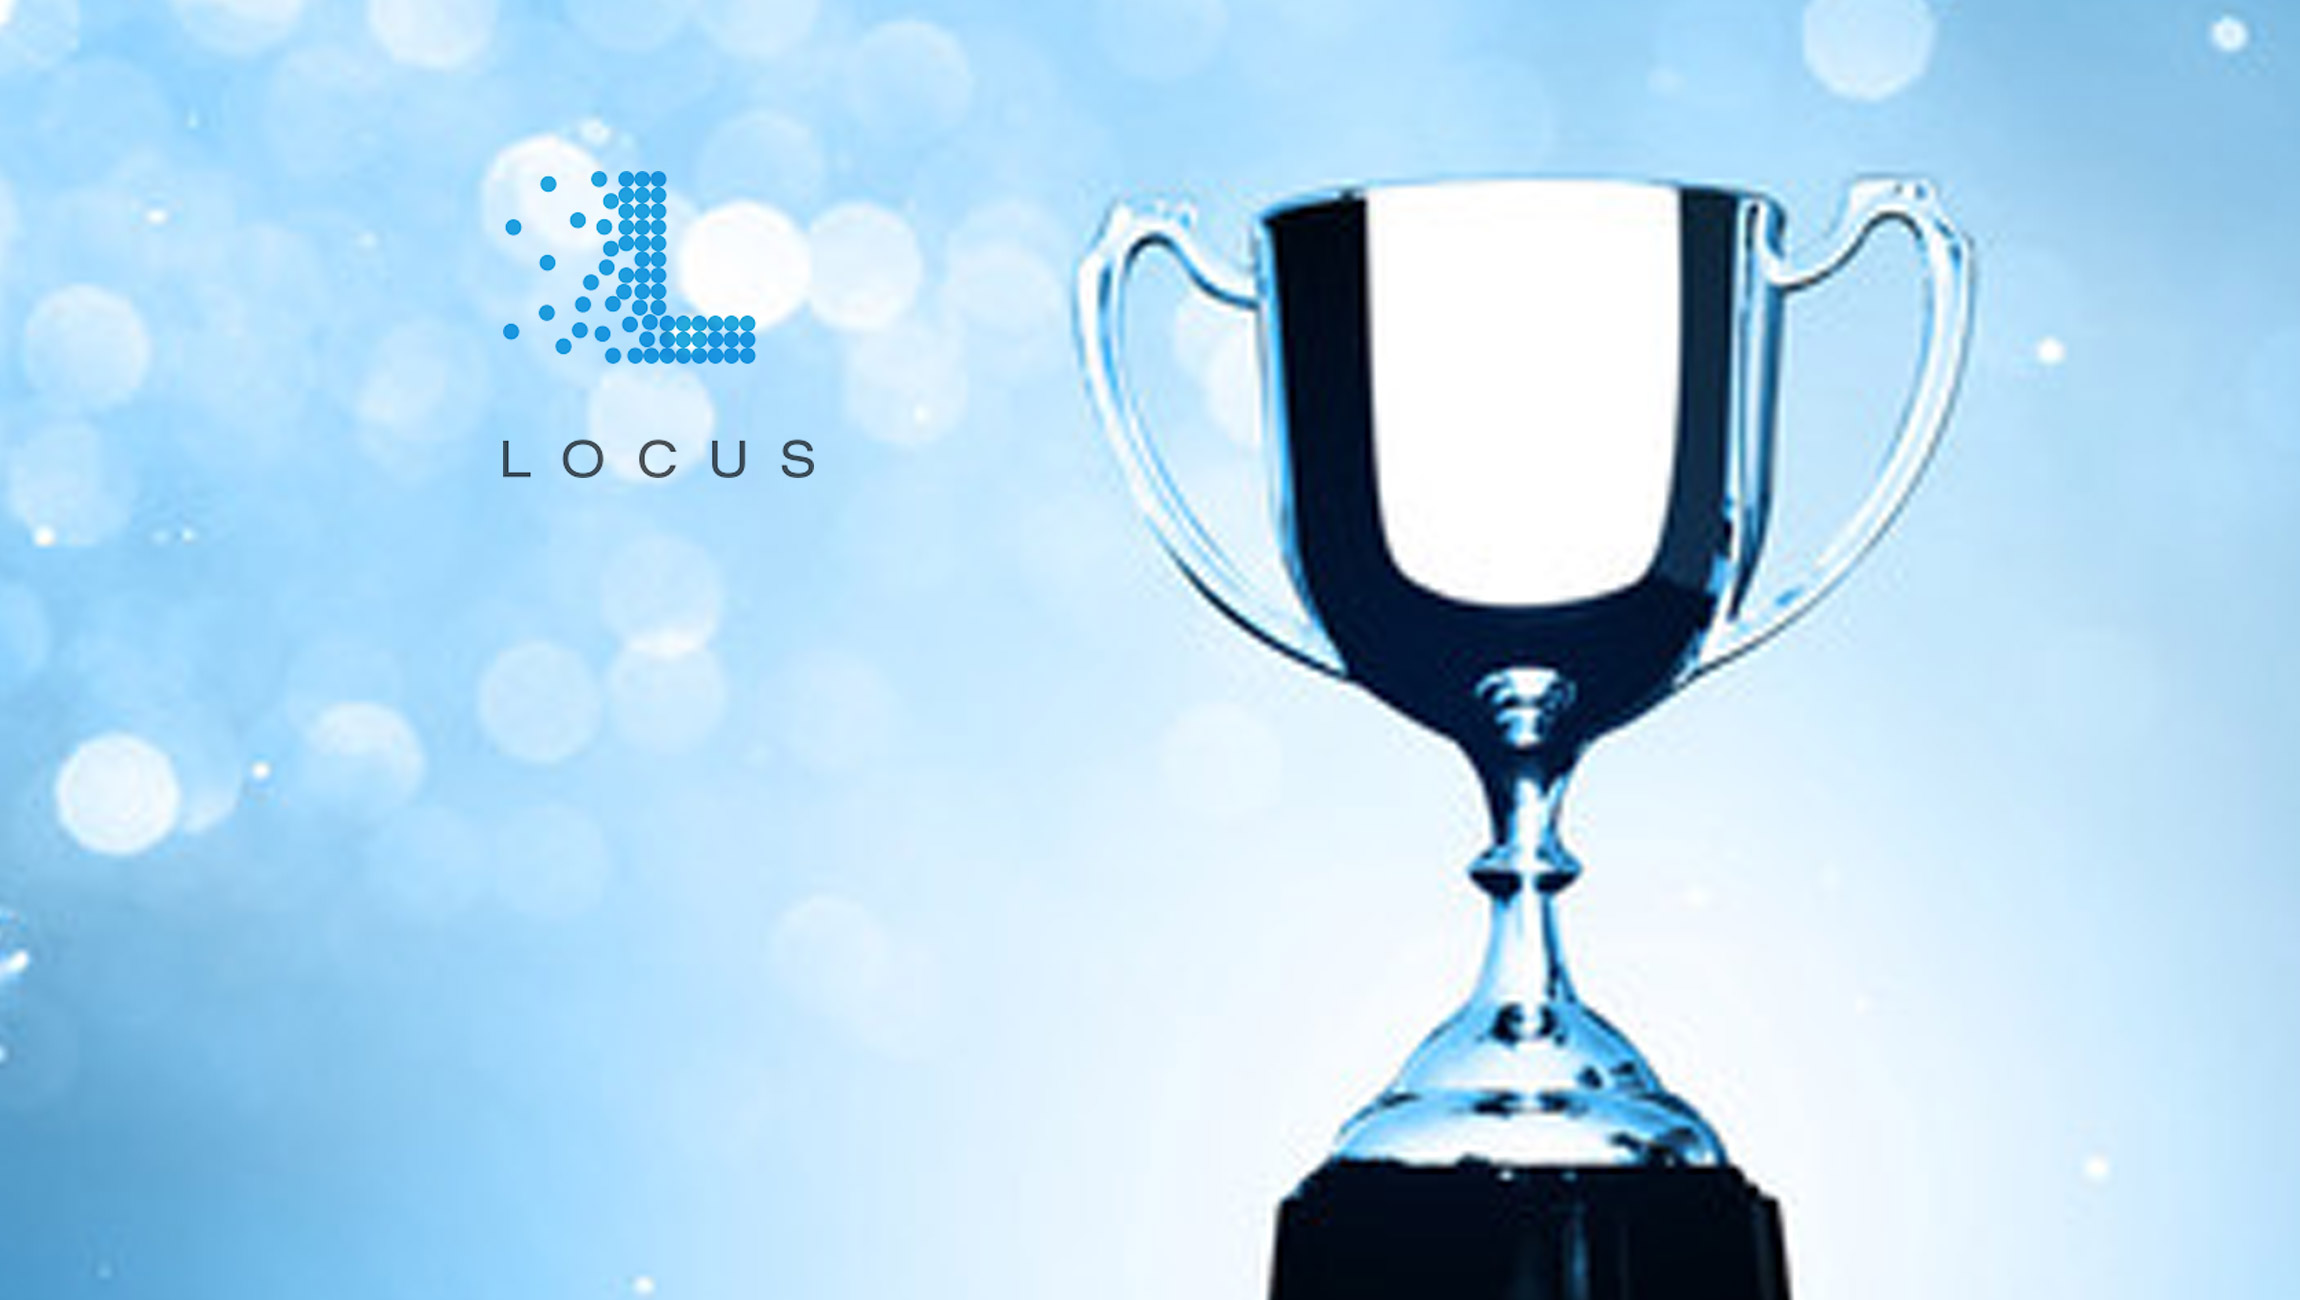 Locus wins 2022 IFOY Award for Top Autonomous Mobile Robot Solution